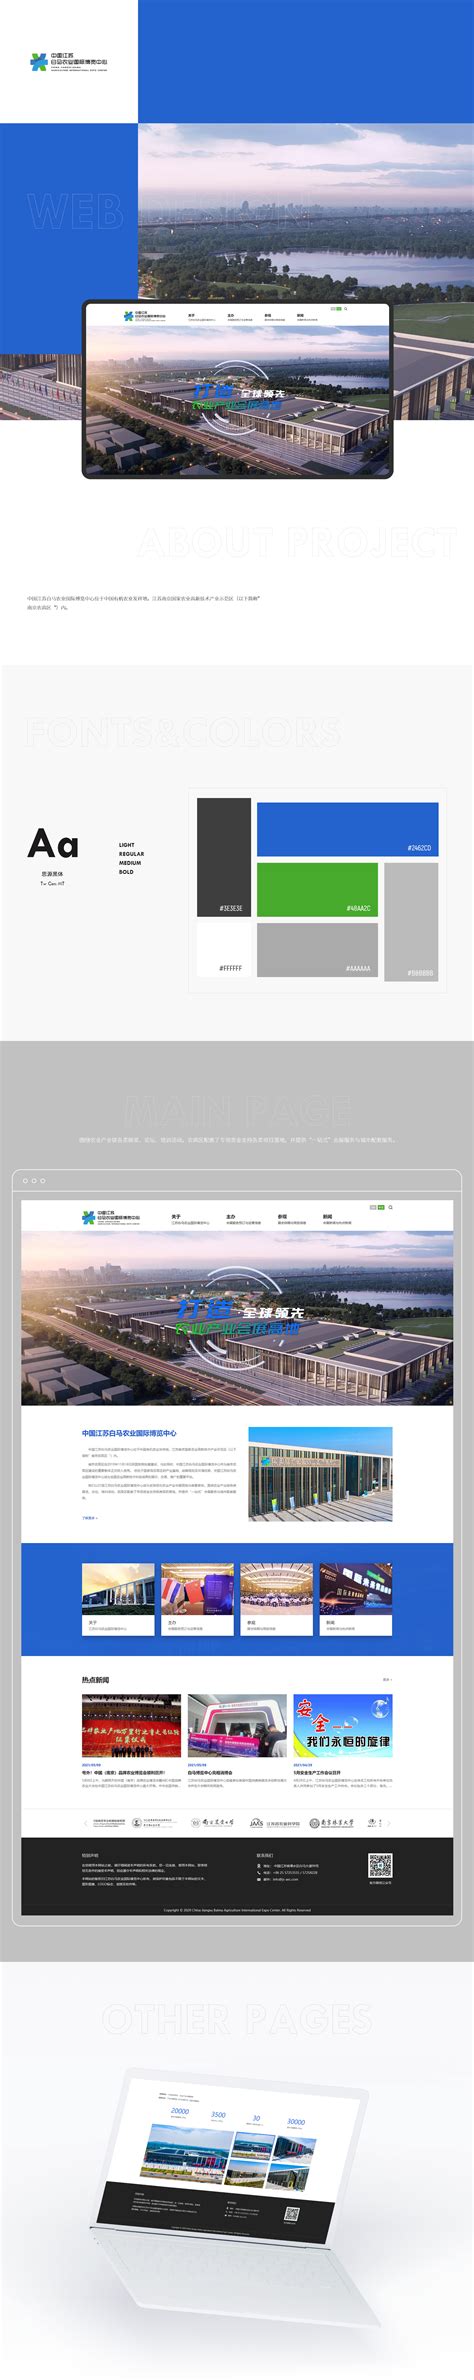 【签约】蓝禾技术-图拉斯品牌网站建设项目 - 方维网络